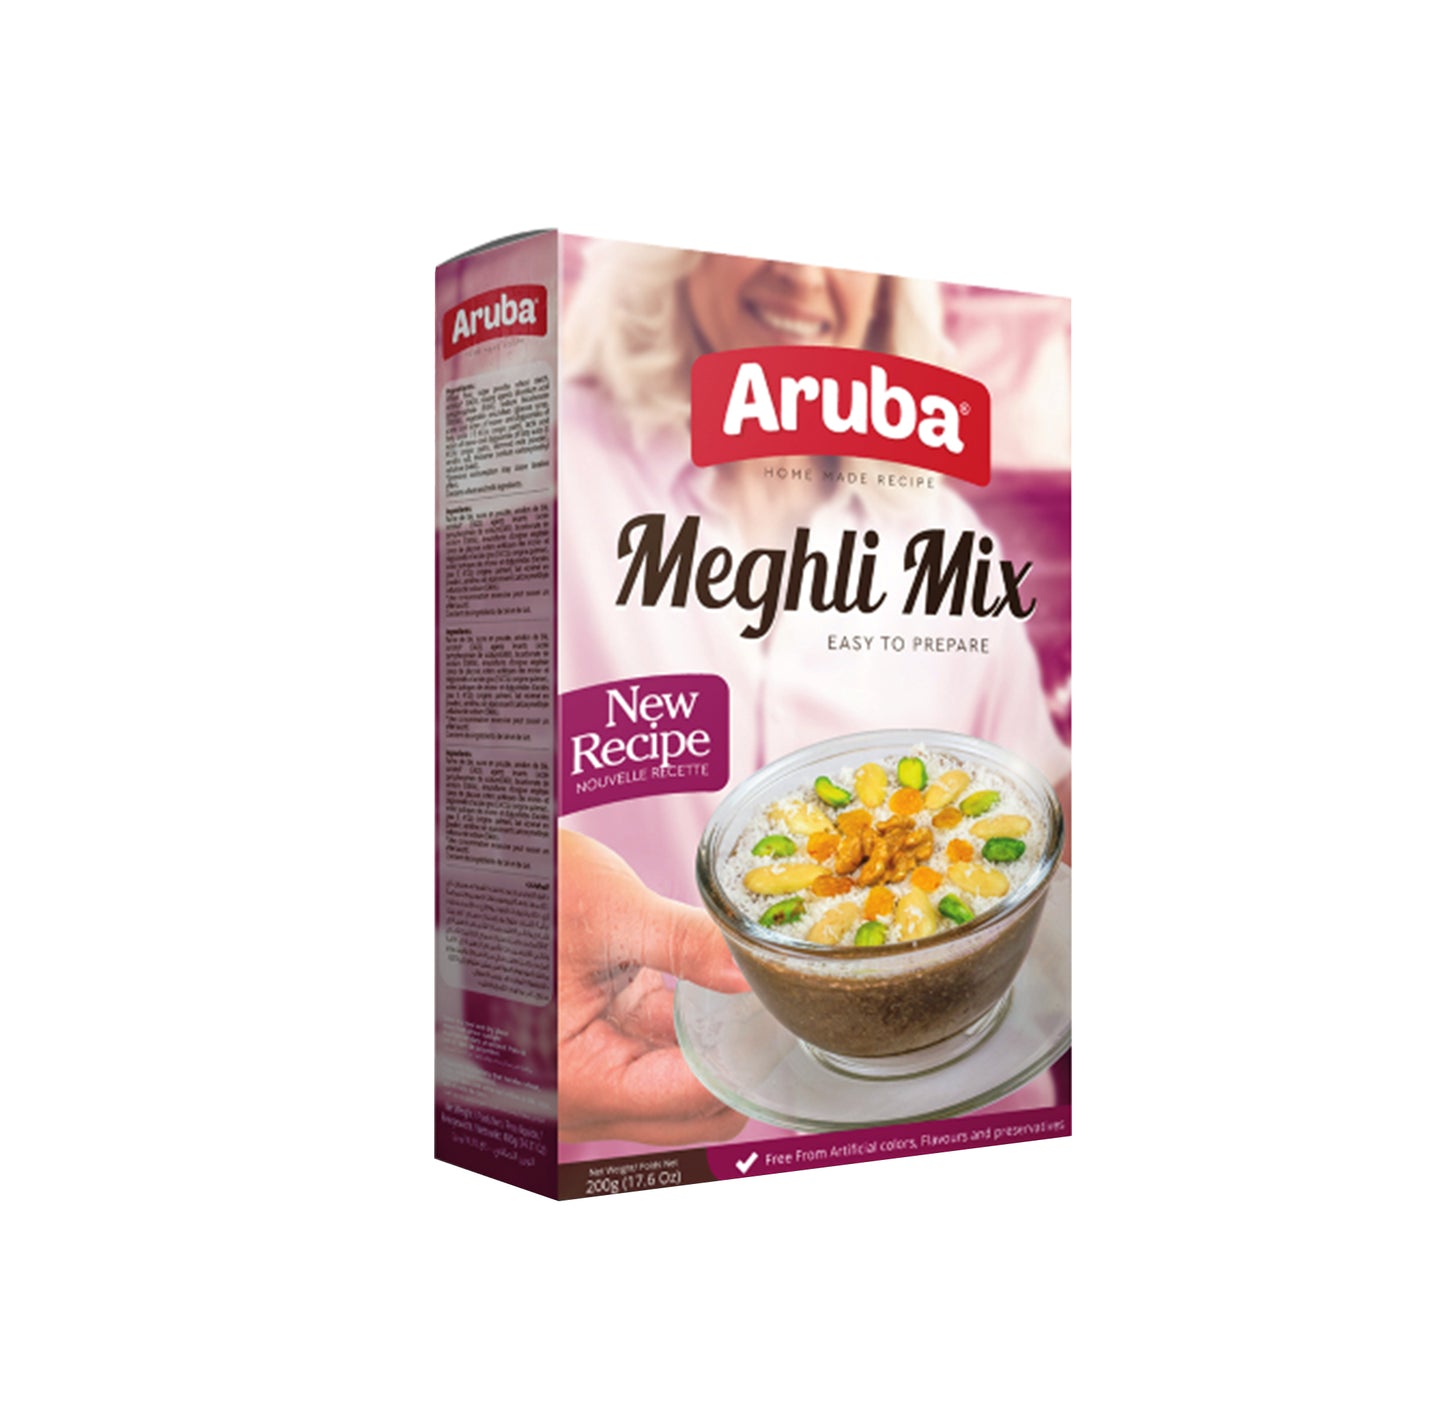 Aruba -Meghli Mix